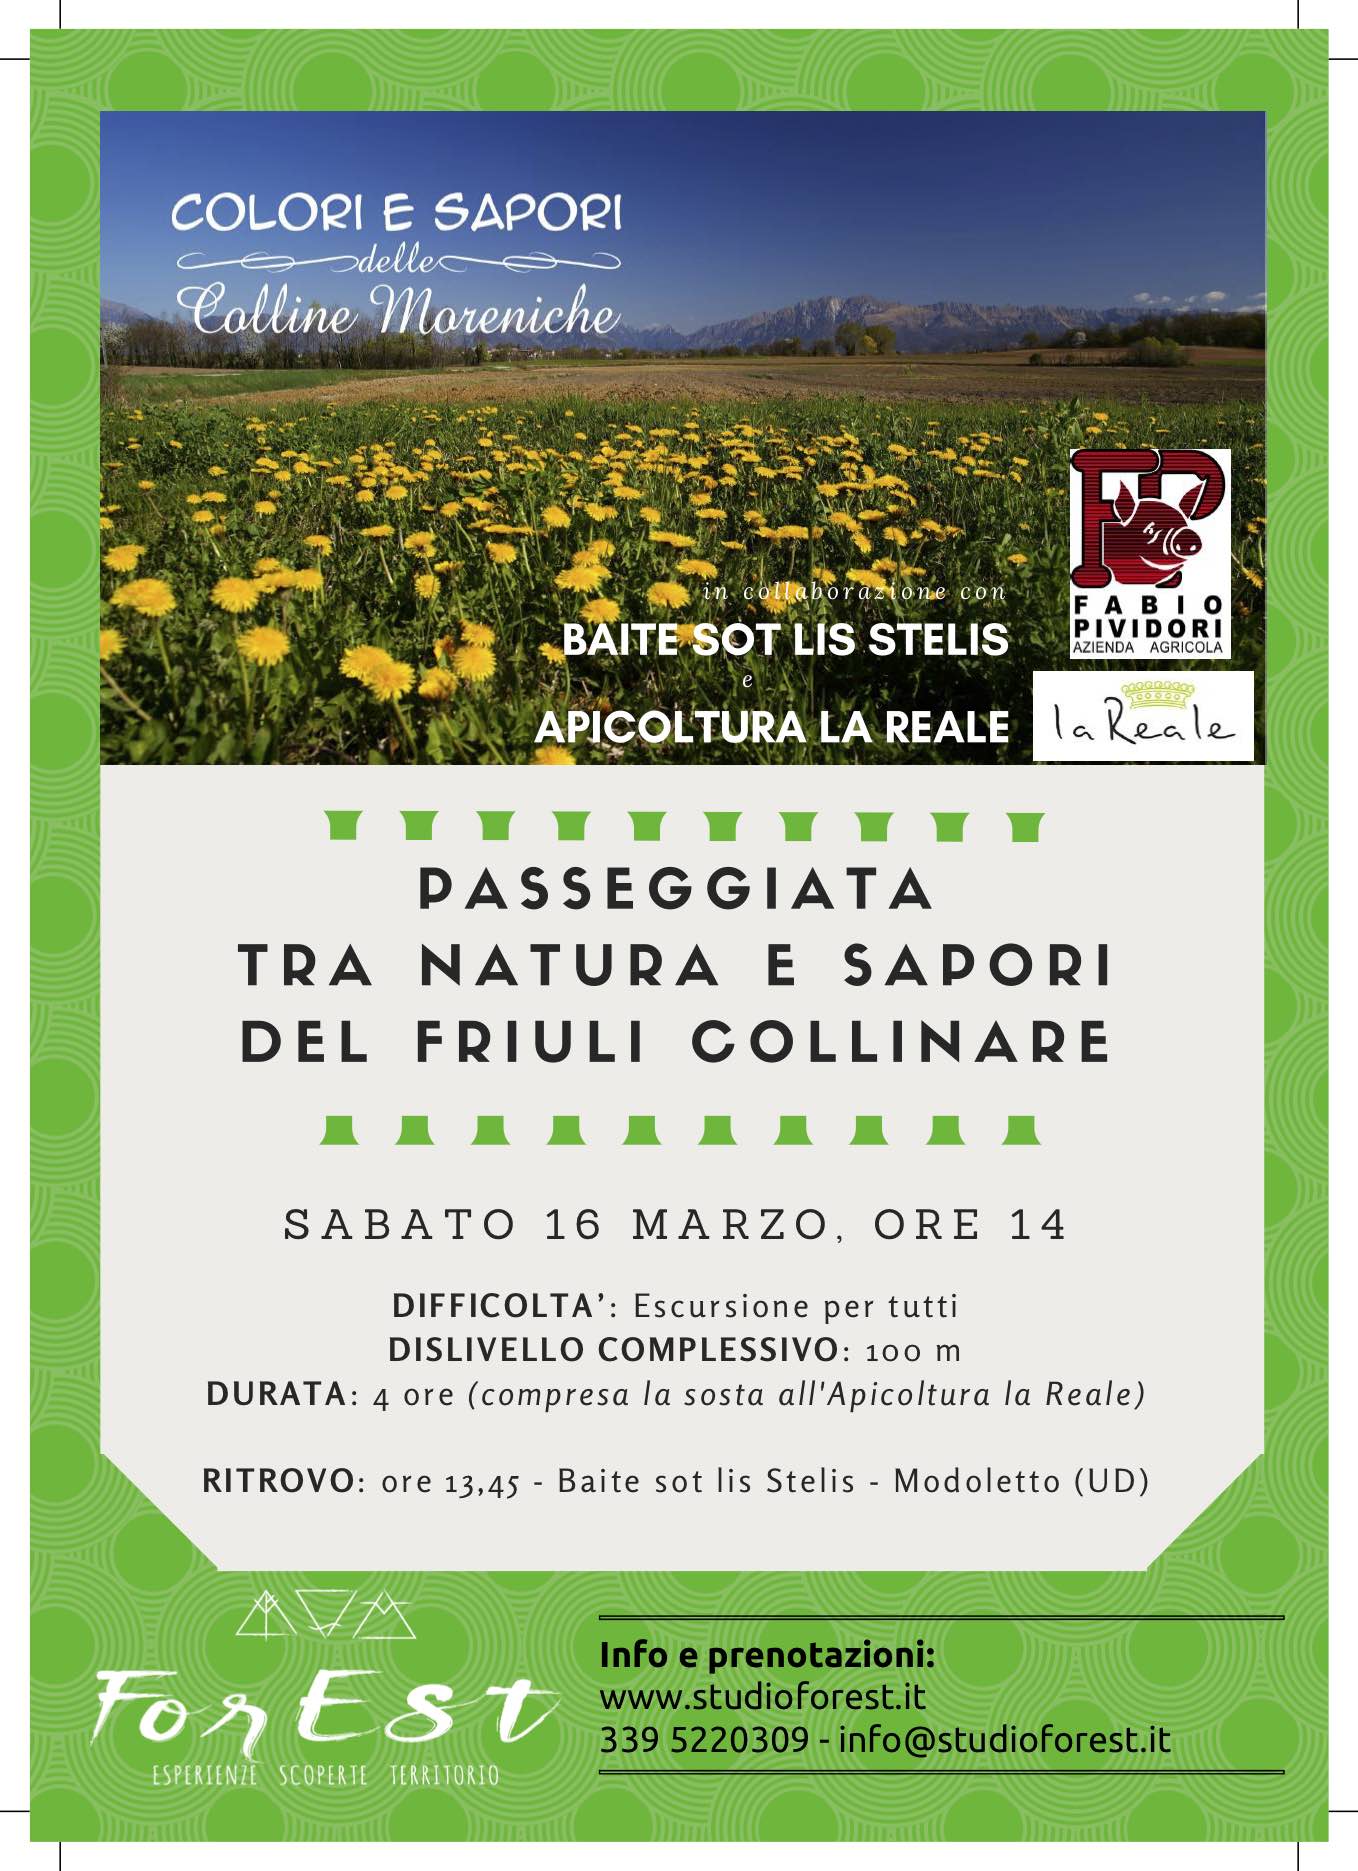 Appuntamento escursionistico alla scoperta delle bellezze e dei sapori delle Colline Moreniche tra Modoletto e Brazzacco: sabato 16 marzo 2019